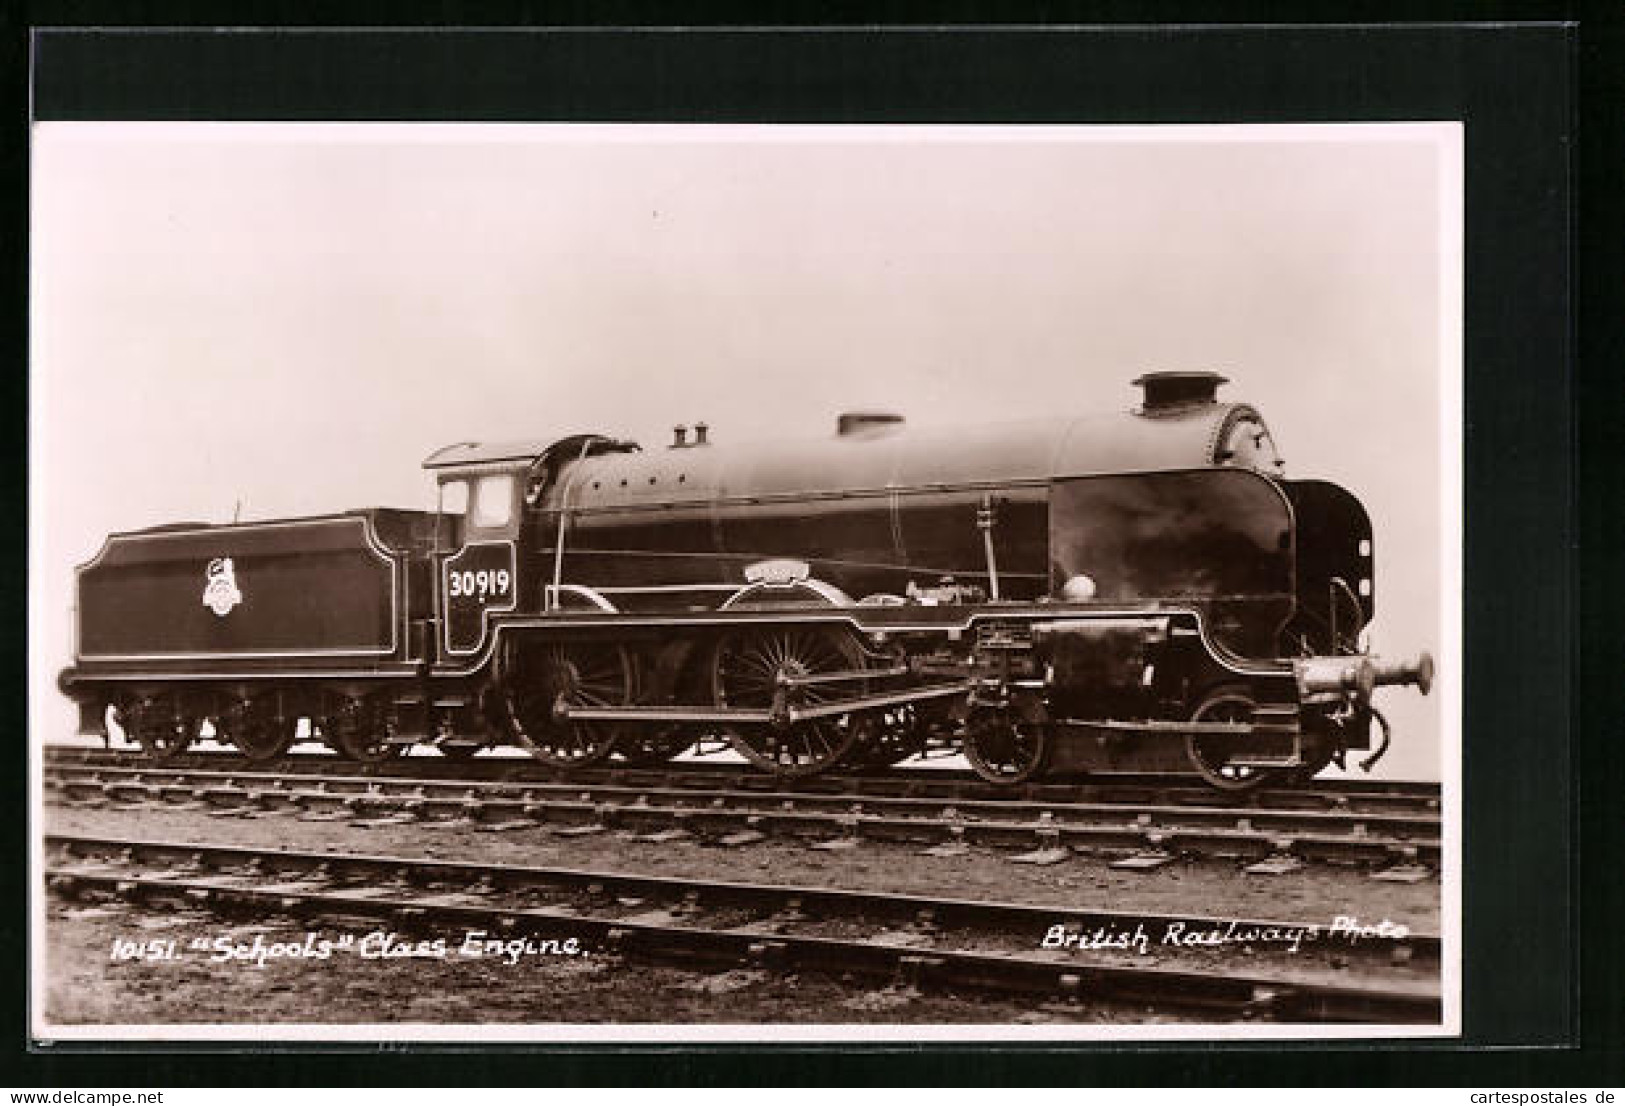 Pc Schools Class Engine, Englische Eisenbahn Nr. 30919  - Trenes